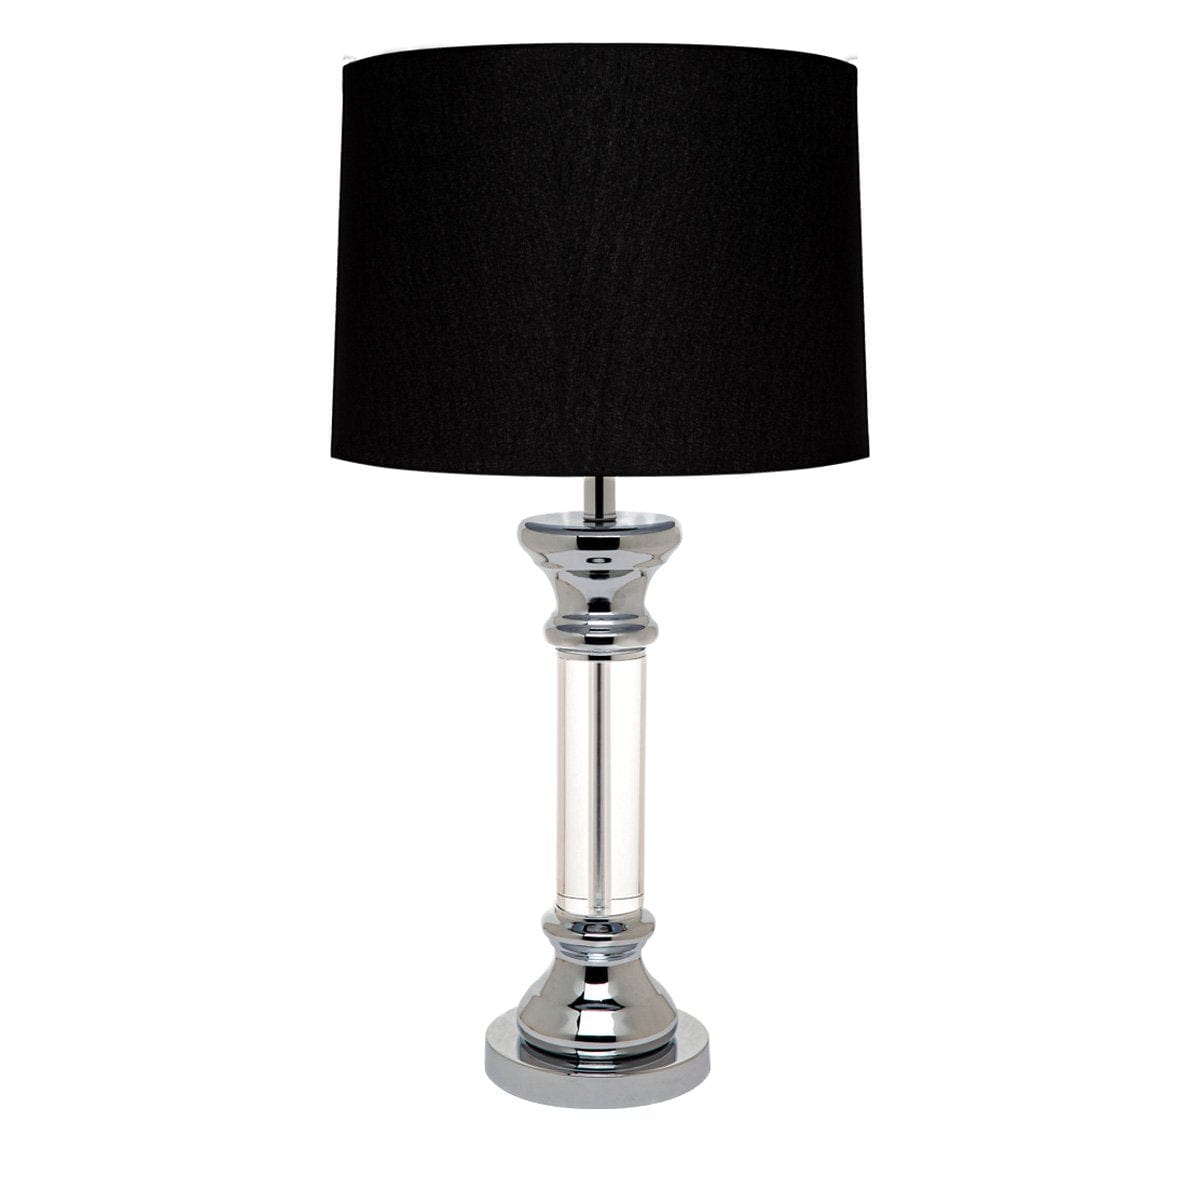 CAFE LIGHTING & LIVING Table Lamp Figaro Chrome Table Lamp - Black 13348